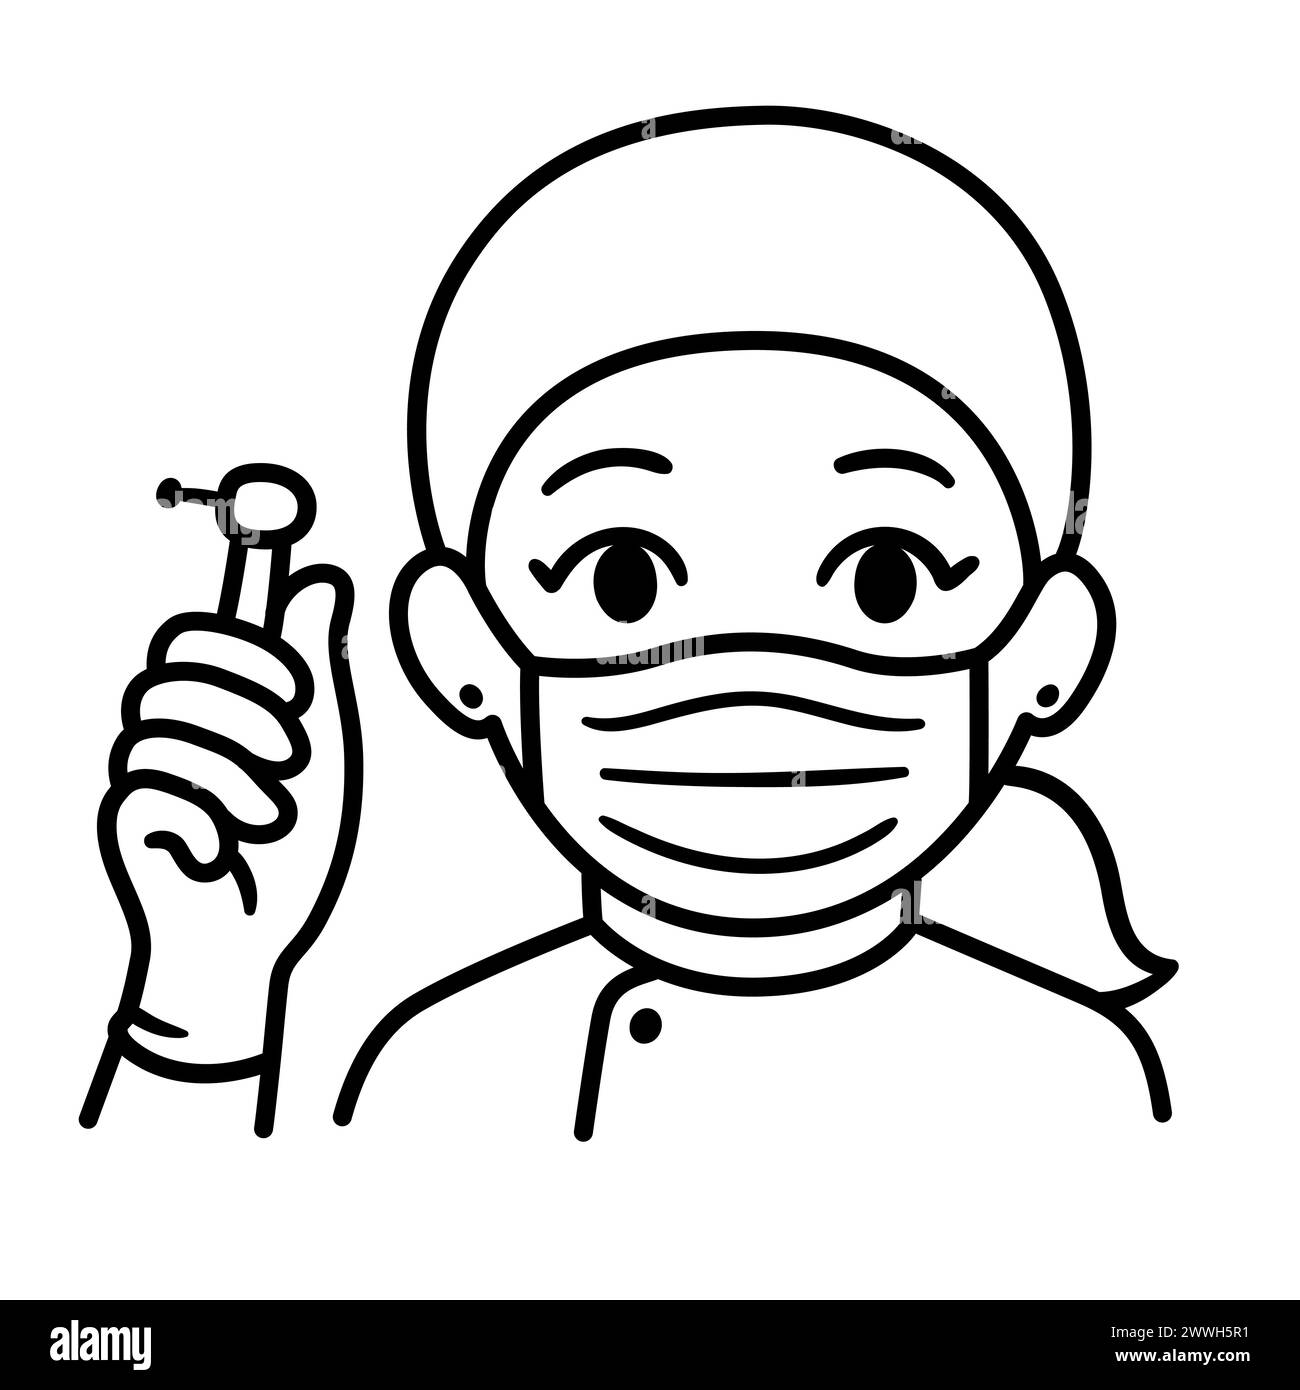 Niedliche Karikatur-weibliche Zahnärztin in Gesichtsmaske, die einen Bohrer hält. Zeichnung von Schwarzweiß-Strichzeichnungen. Einfache handgezeichnete Kritzelei, Vektor-Clip-Kunst-Illustration. Stock Vektor